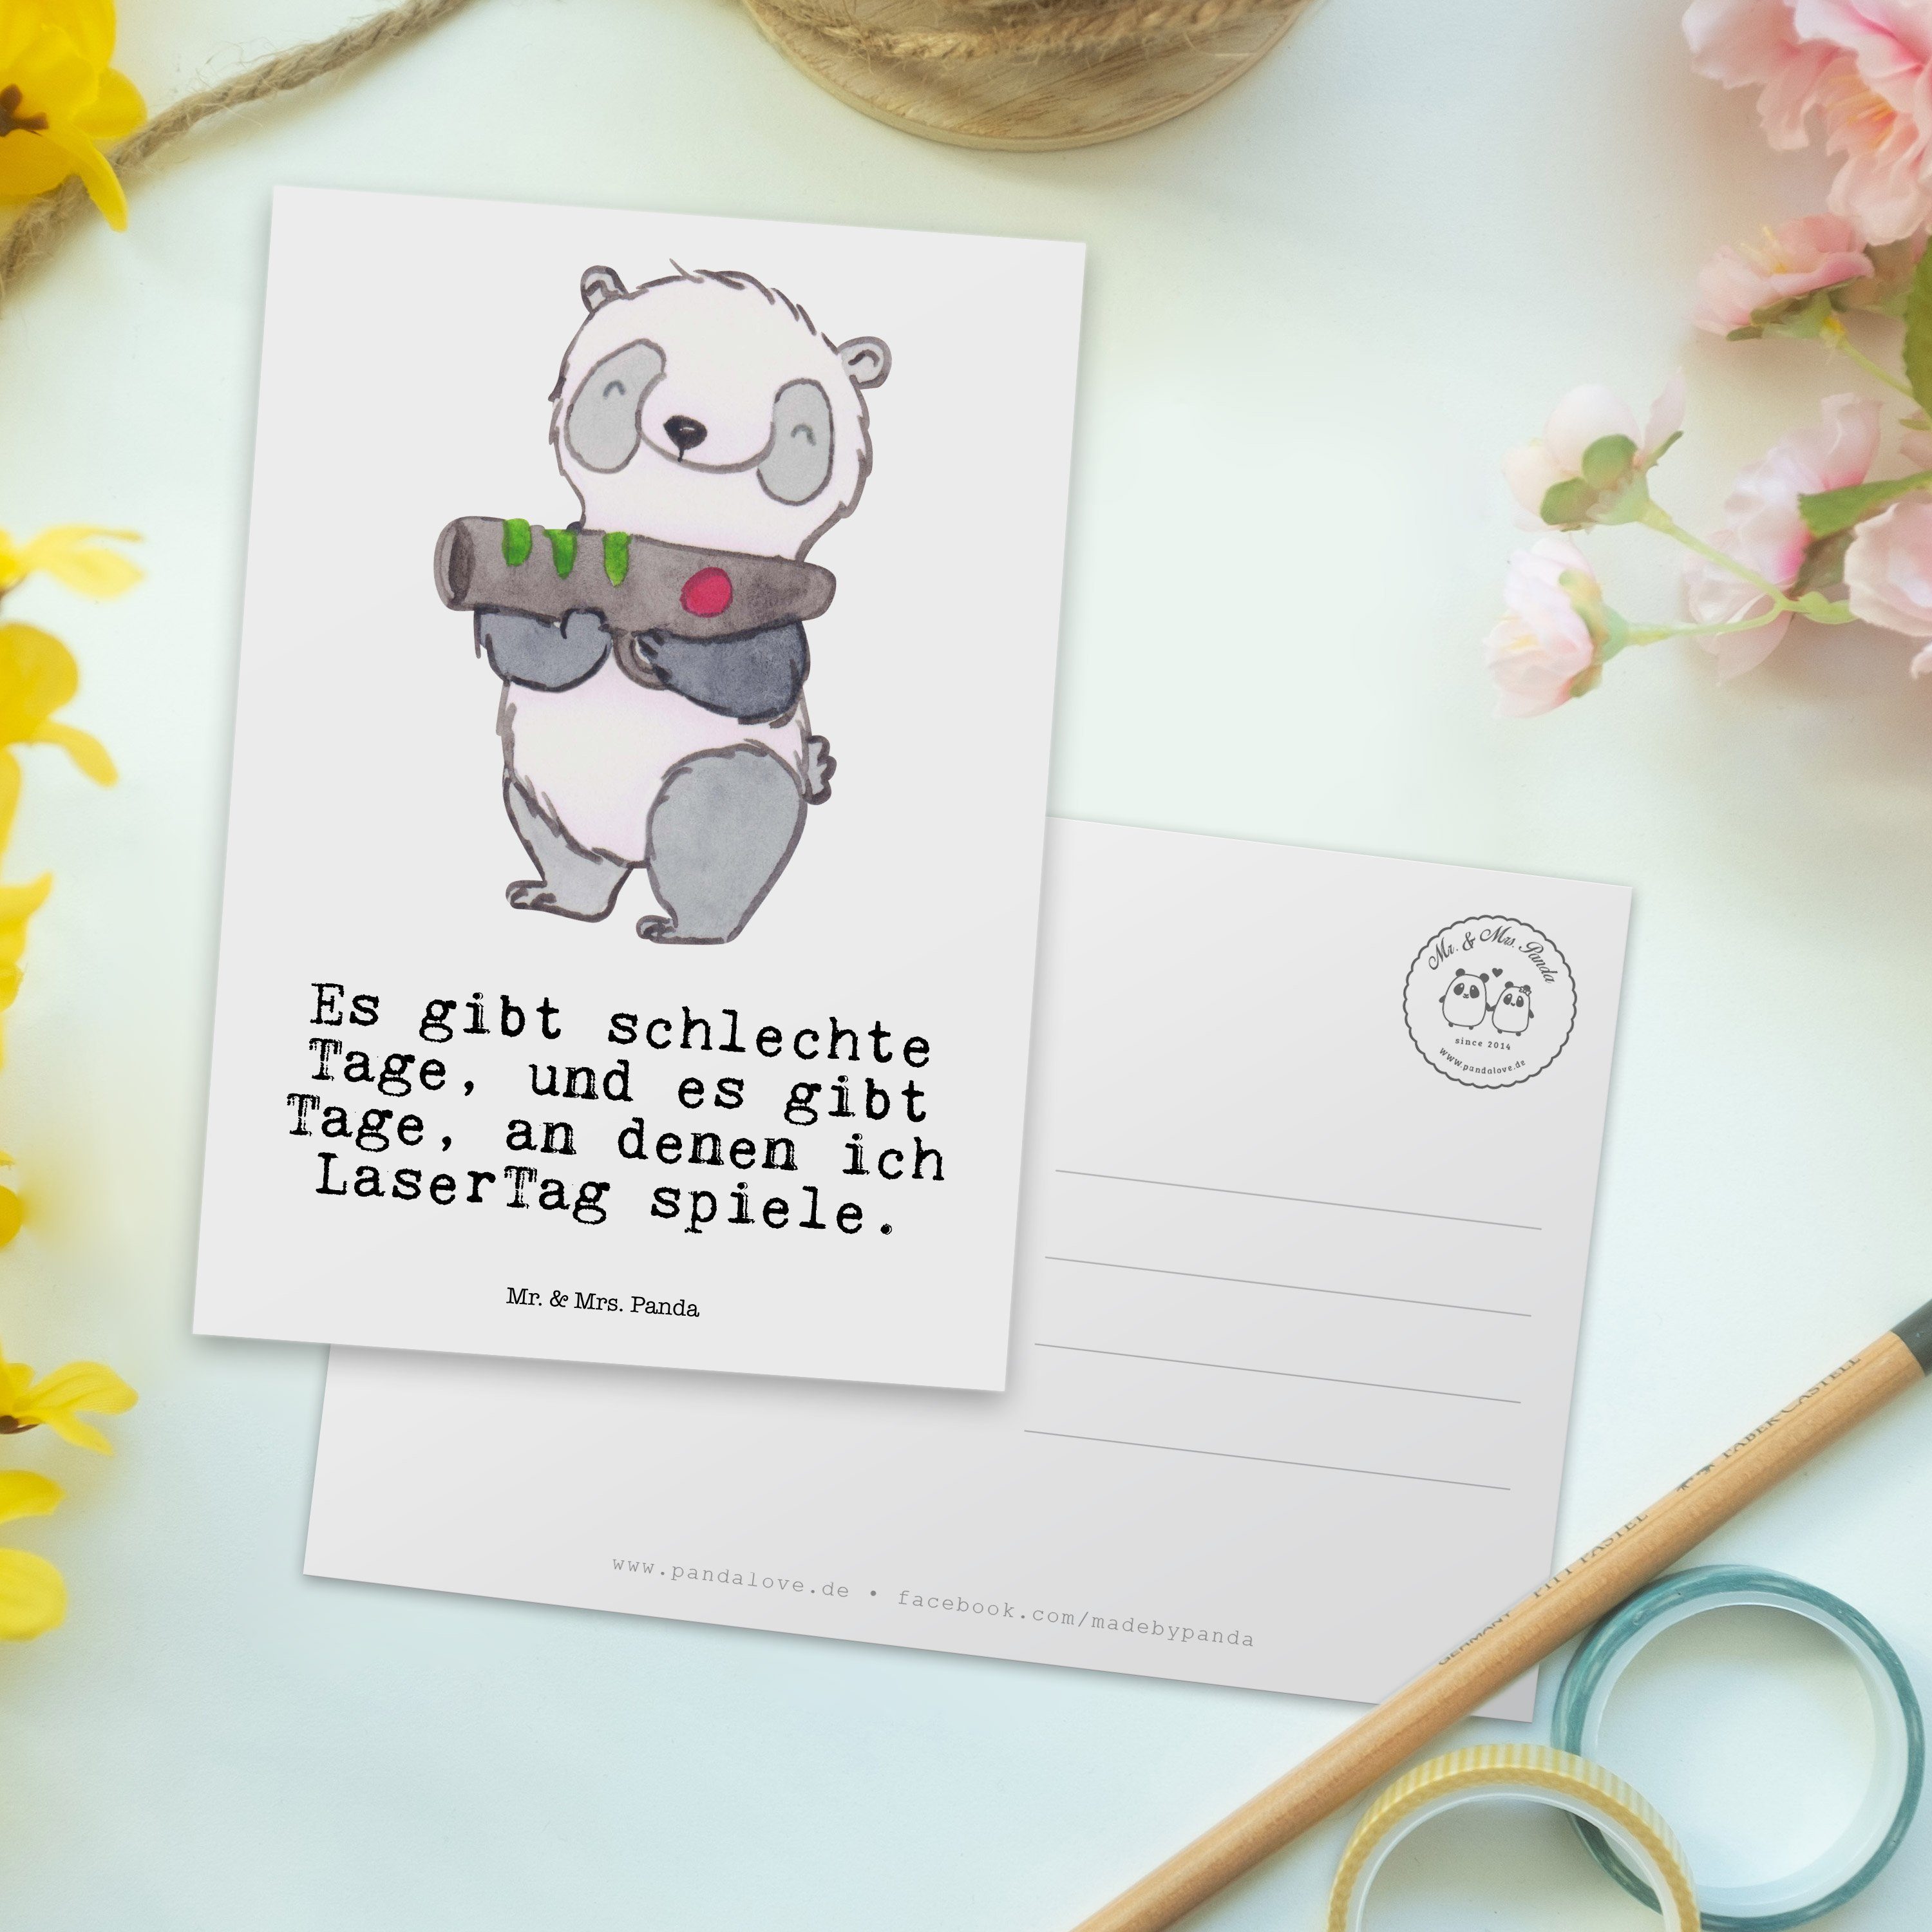 Mr. & Mrs. Panda Postkarte - Gewinn, Geschenk, Weiß Sport, Einladung, LaserTag Tage Panda Lase 